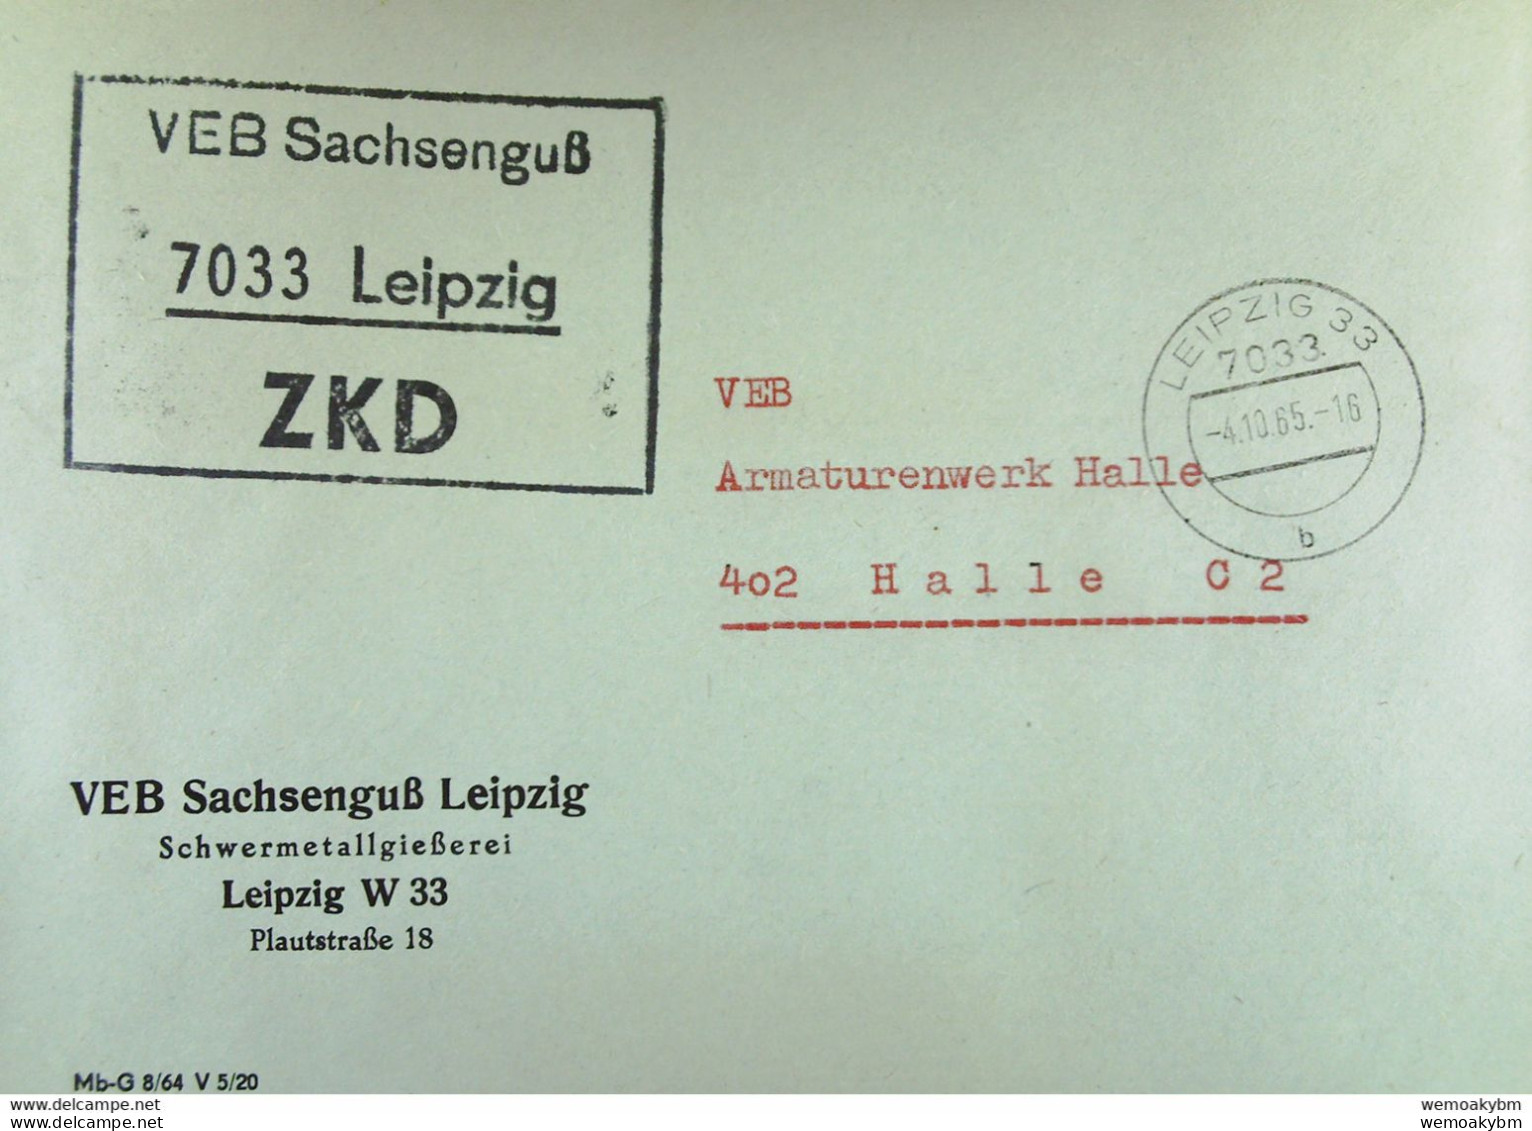 Brief Mit ZKD-Kastenstempel "VEB Sachsenguß 7033 Leipzig" Vom 4.10.65 An VEB Amaturenwerk Halle - Centrale Postdienst